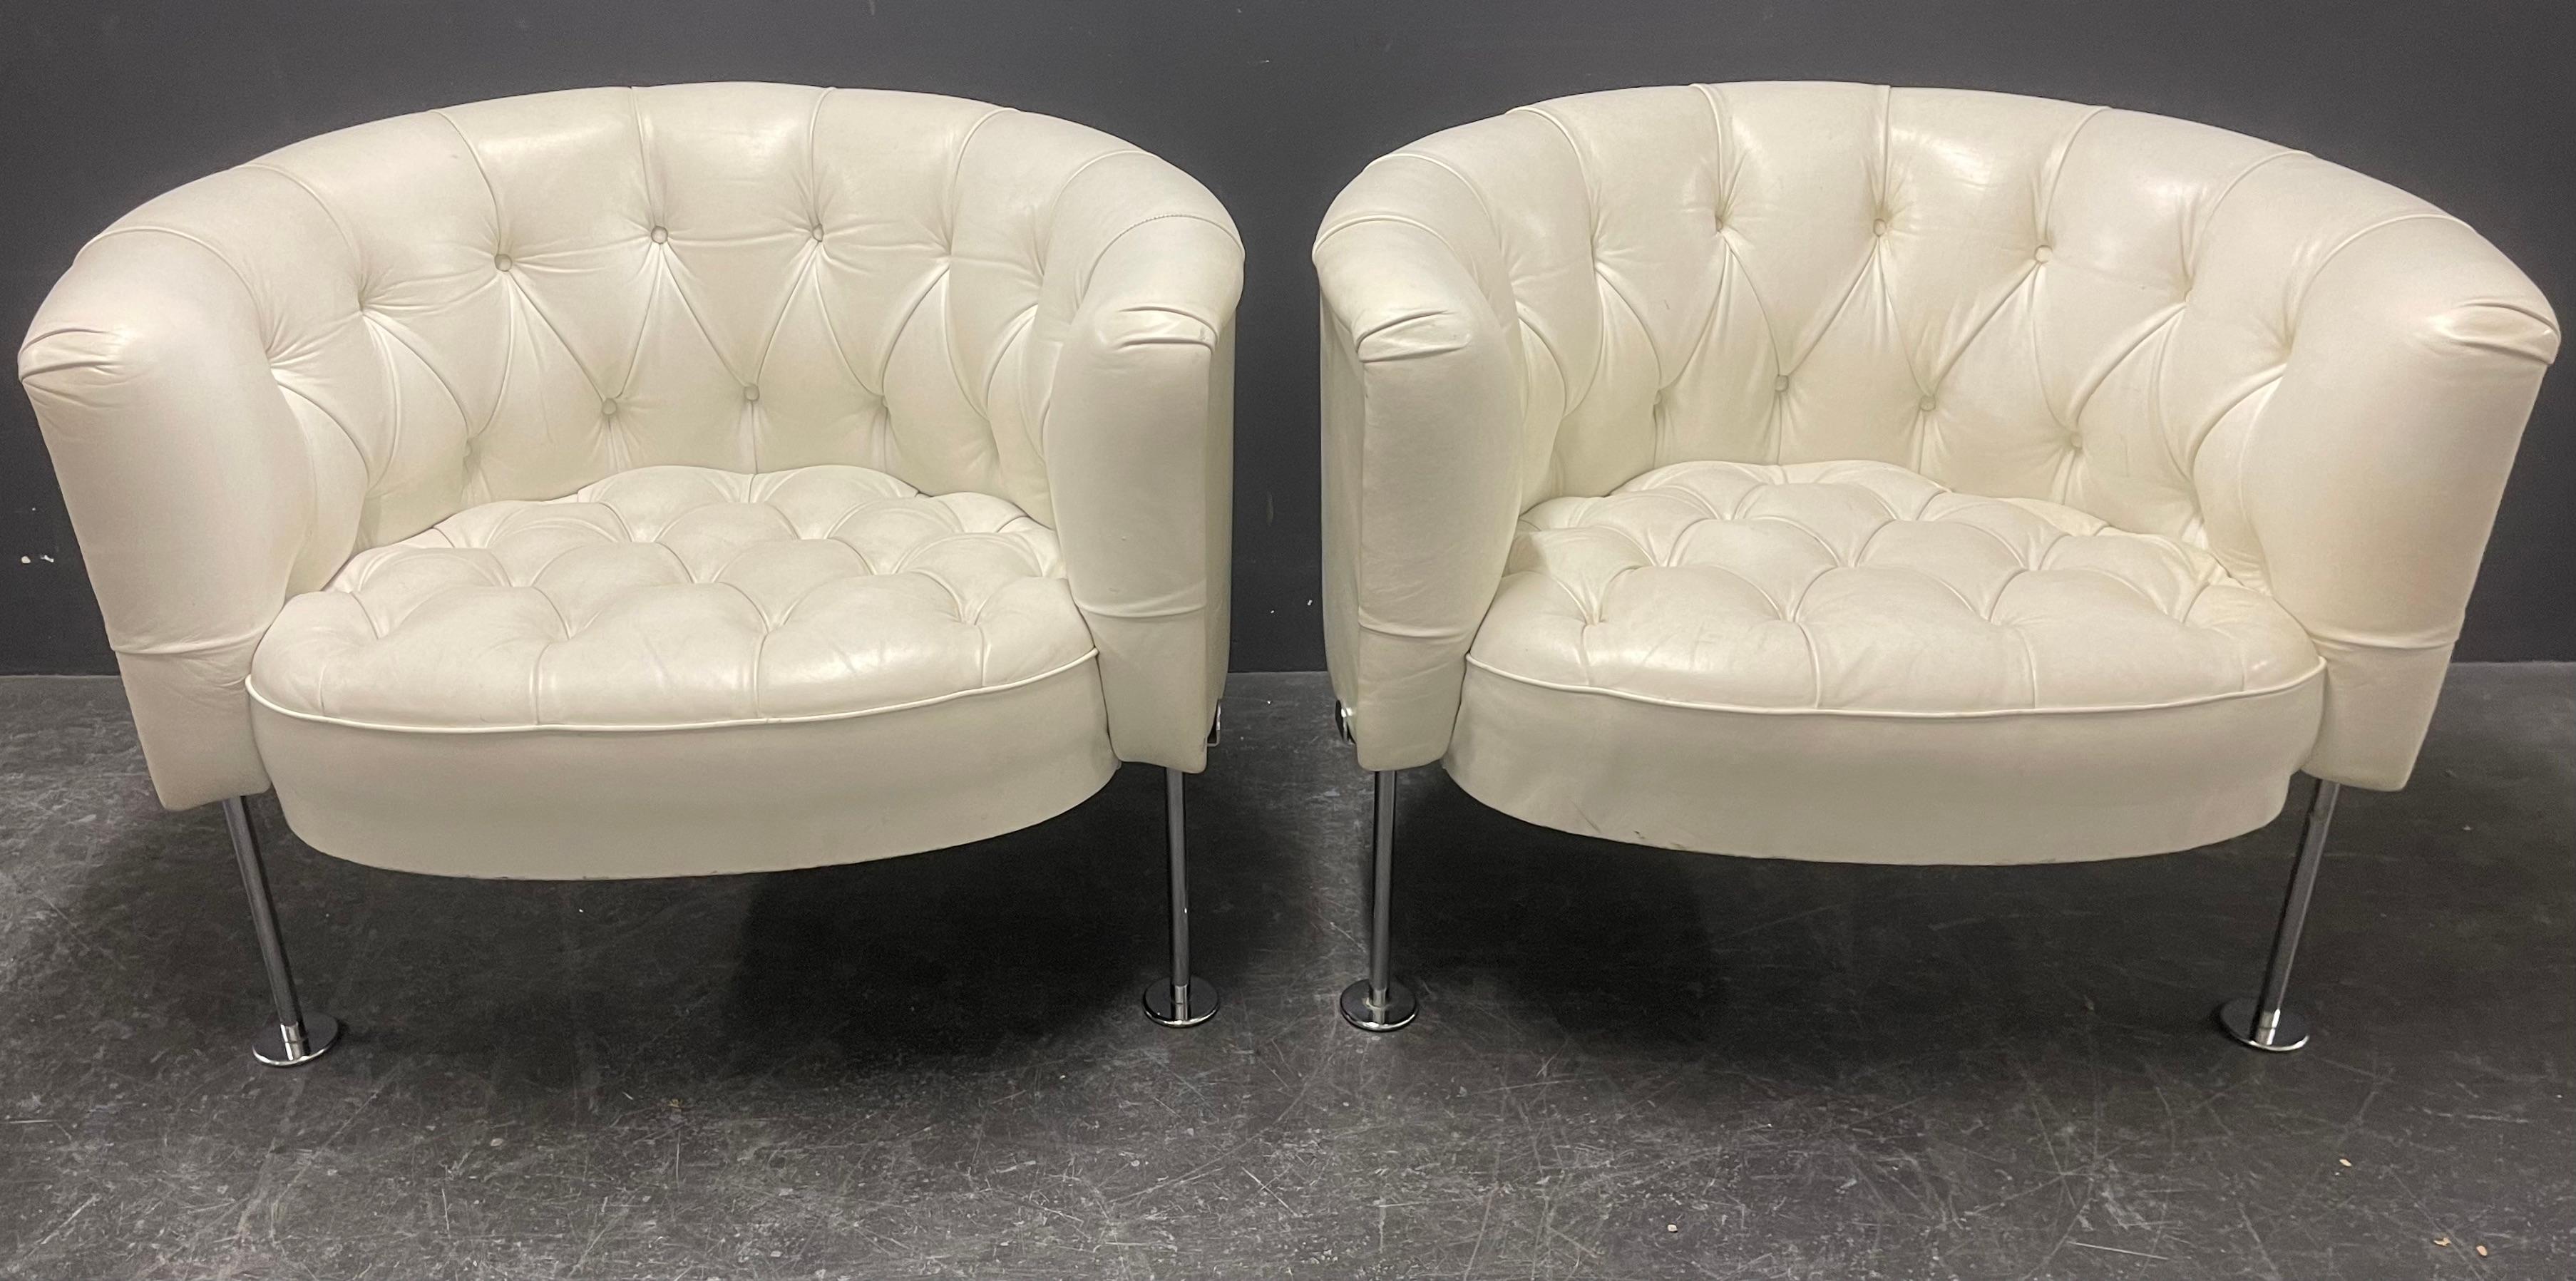 ensemble de fauteuils larges et confortables conçus par robert haussmann et fabriqués par la marque la plus exclusive de meubles en cuir. de sede suisse.